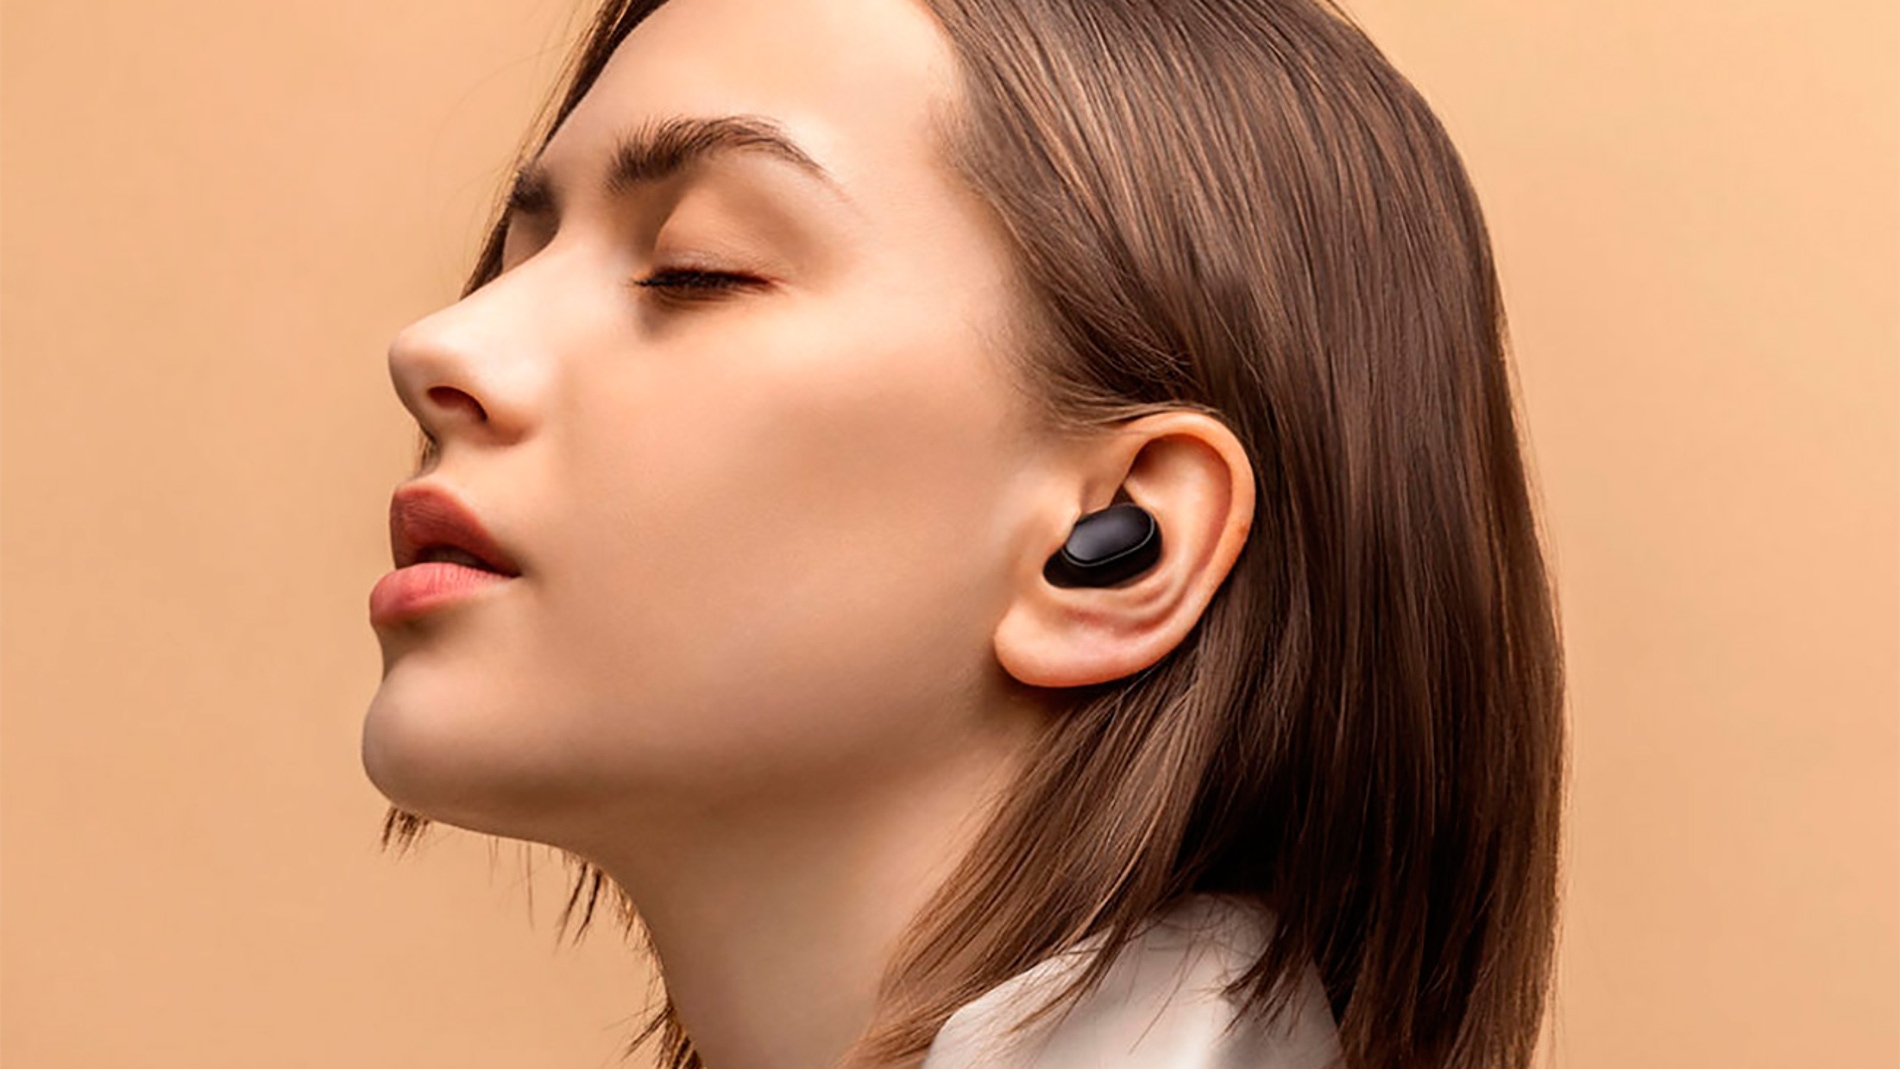 Nuevos auriculares bluetooth de Xiaomi por poco más de 10€, Gadgets